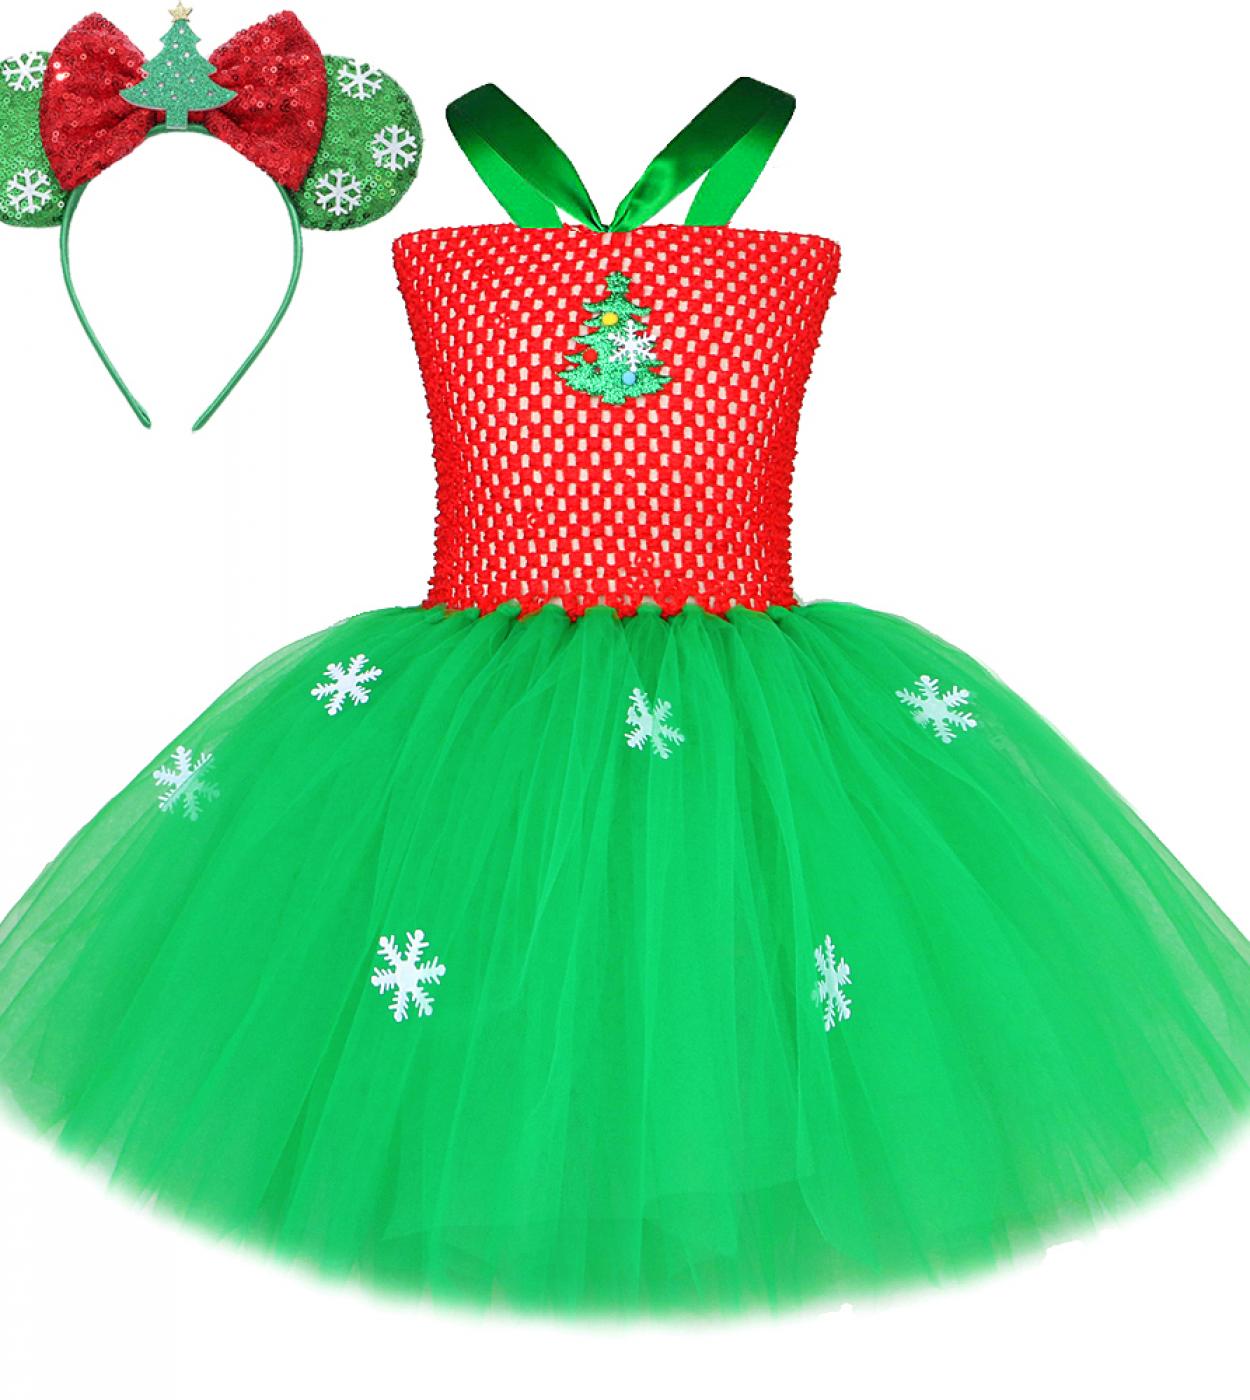 فستان توتو على شكل شجرة الكريسماس للبنات أزياء الكريسماس للعام الجديد للأطفال فساتين تنكرية لحفلات أعياد الميلاد وحفلات أعياد ال